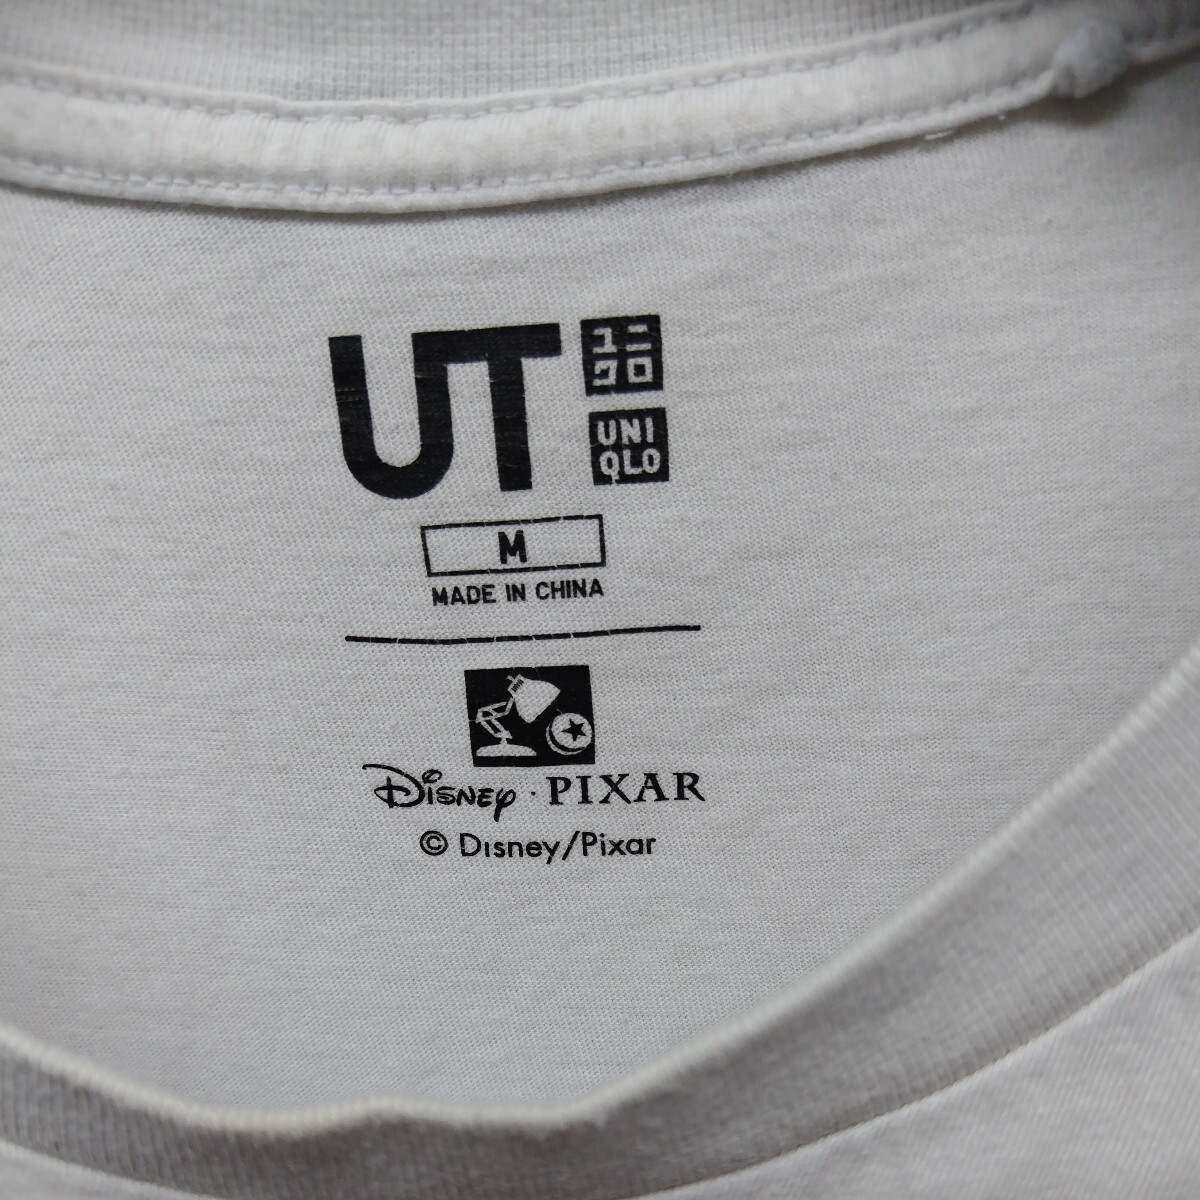 ユニクロ メンズMサイズ半袖Tシャツ 250円特別大特価キャンペーン_画像5